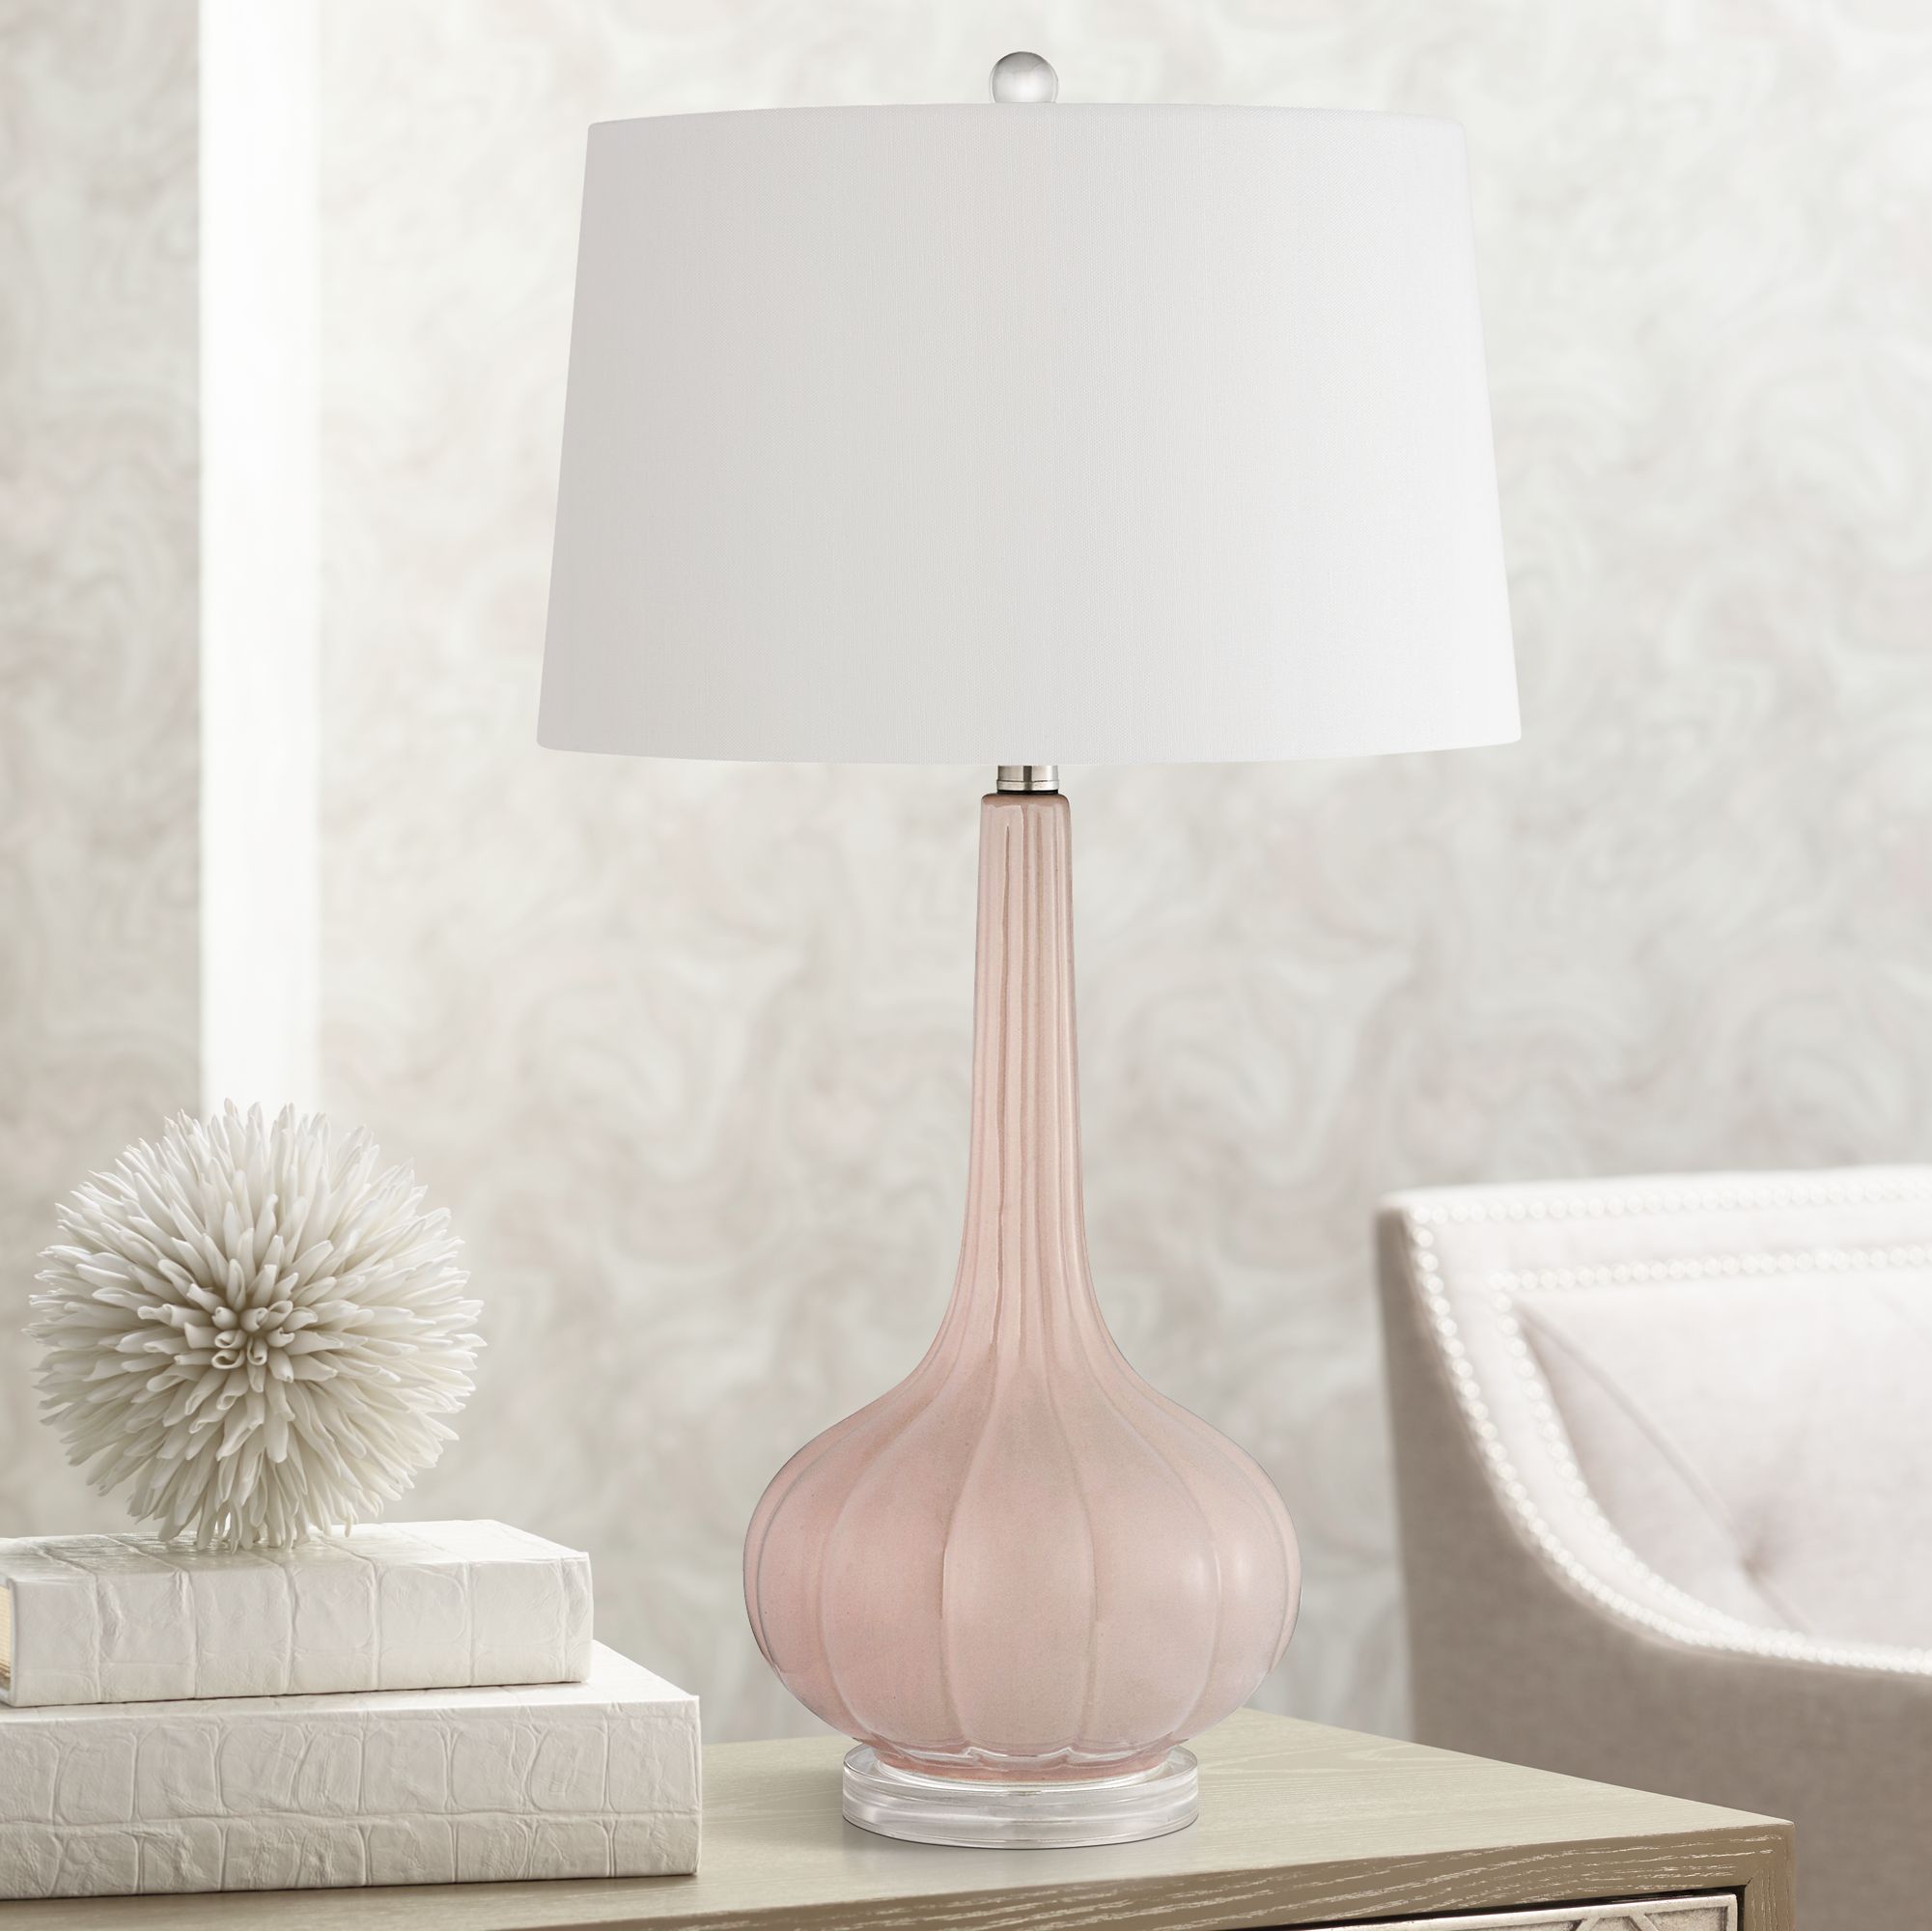 pink bedside lamps